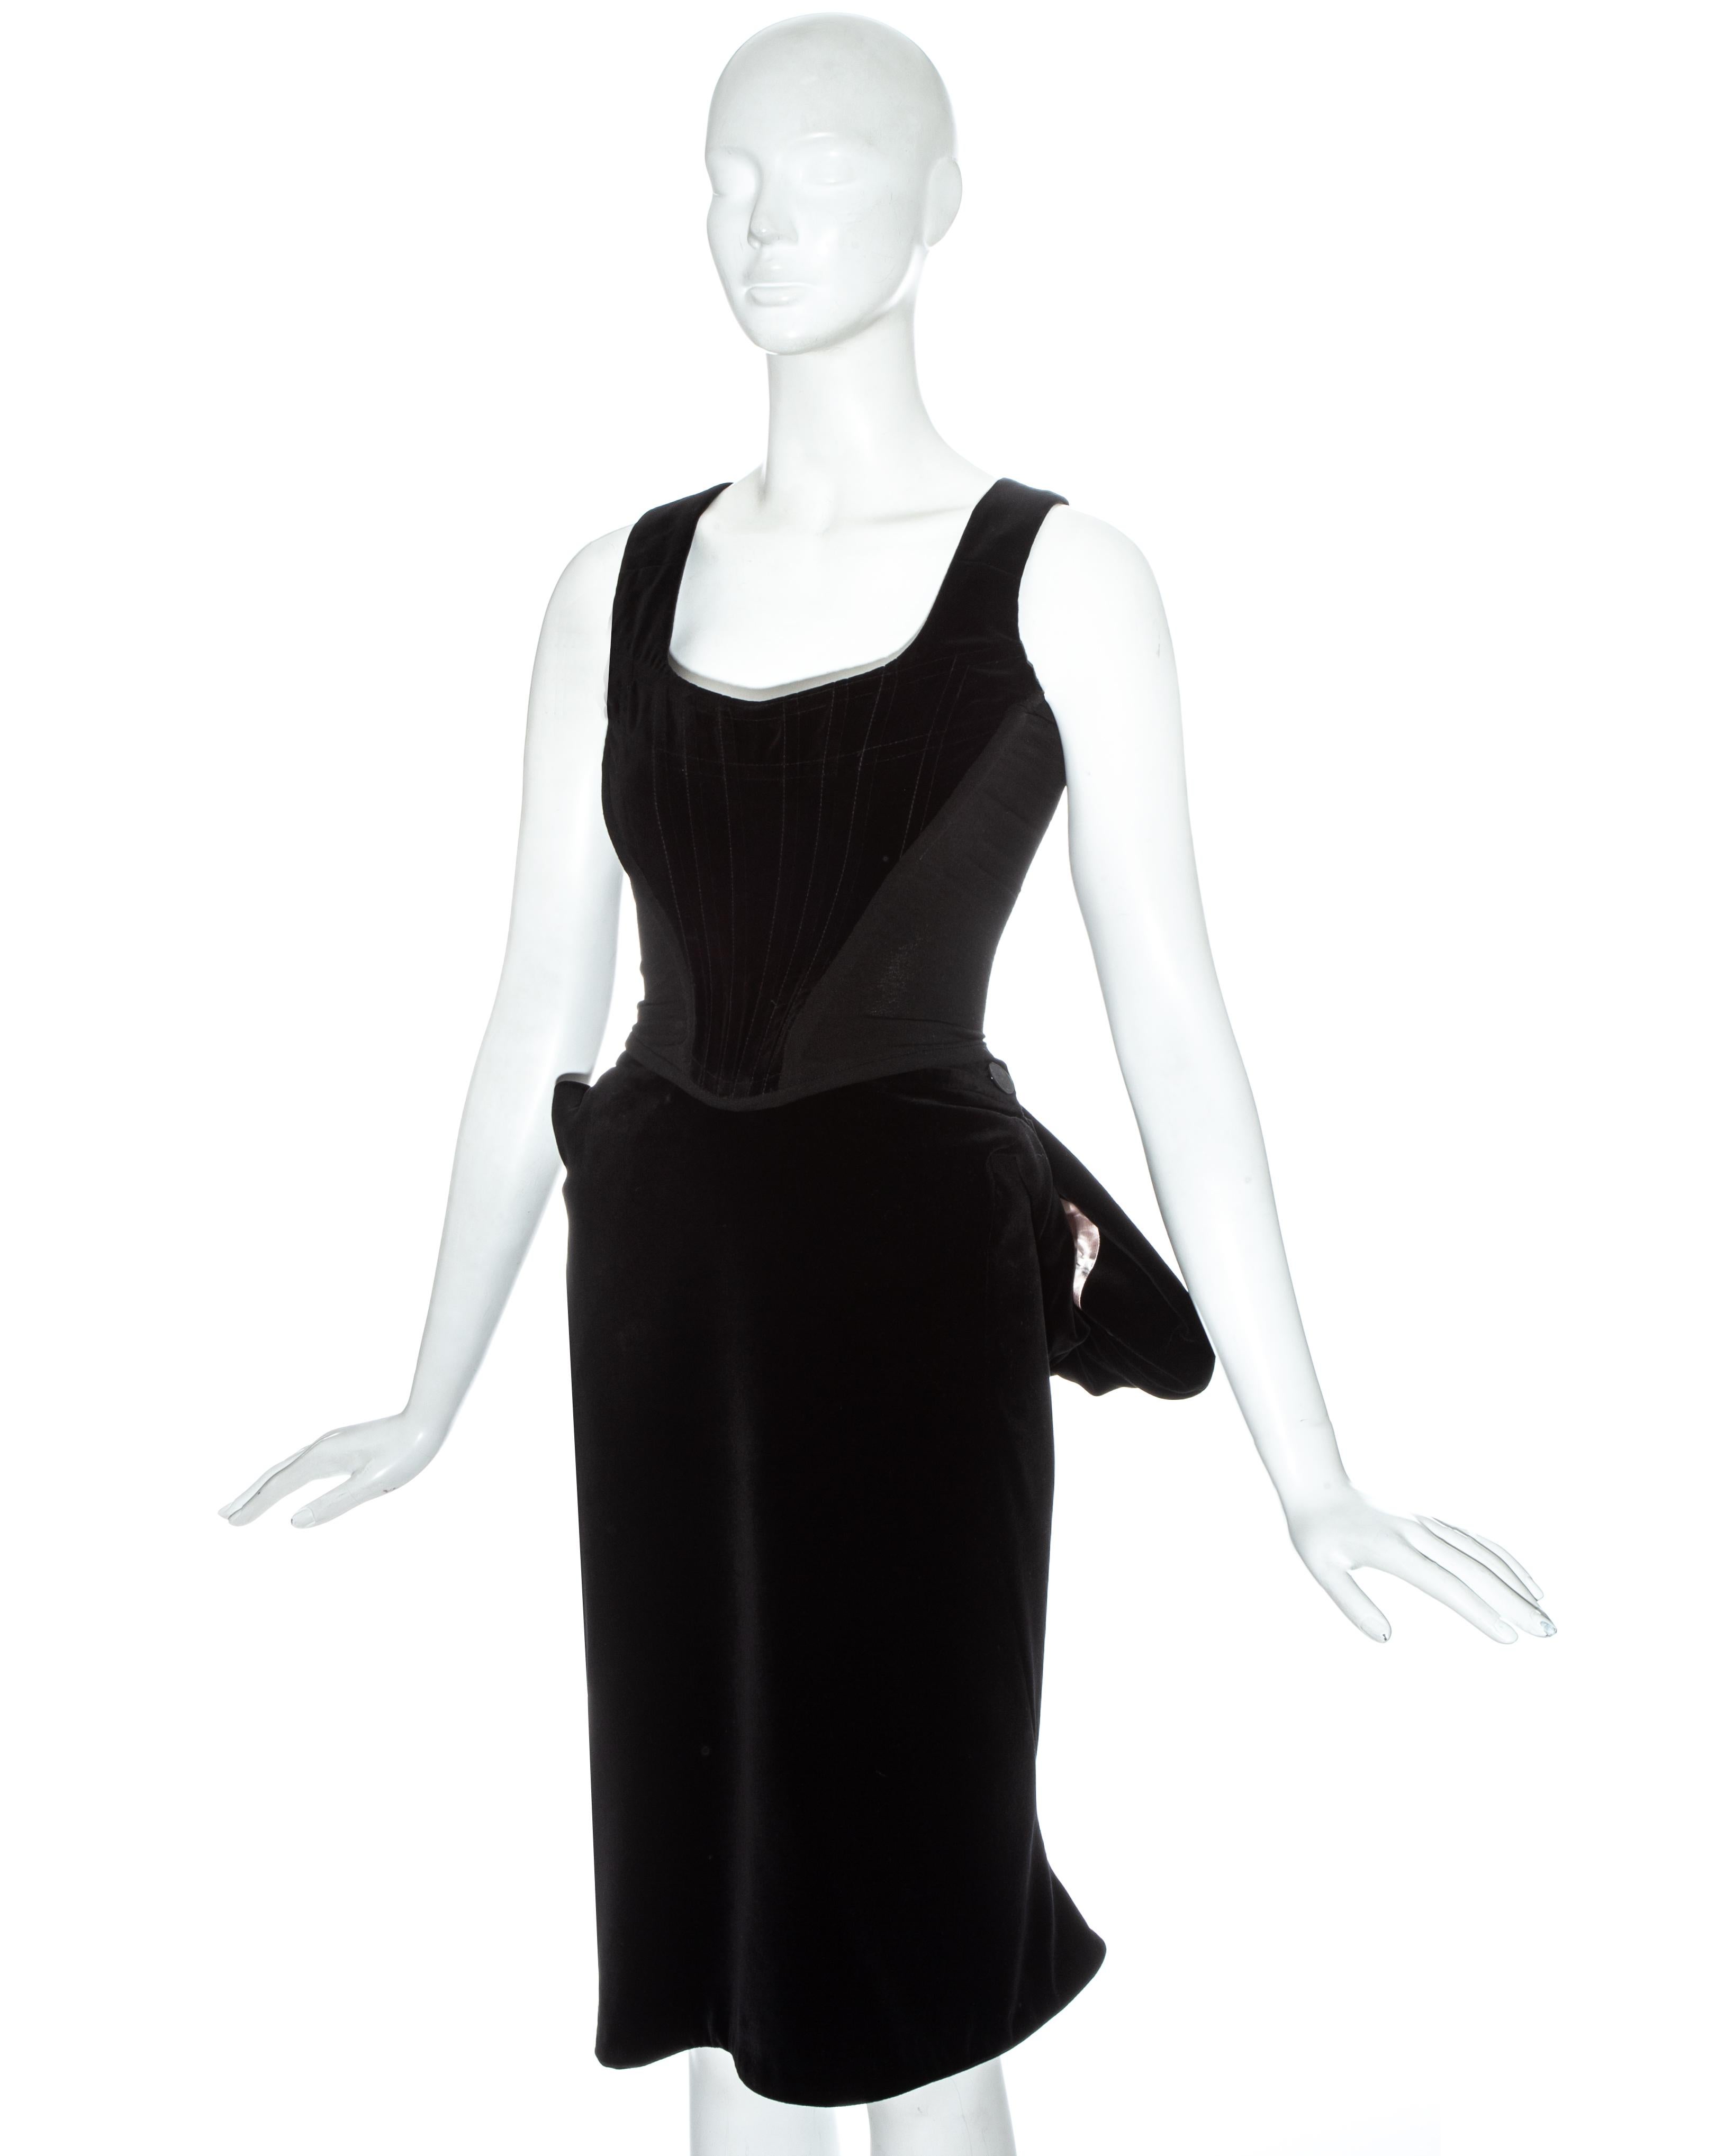 Vivienne Westwood black velvet evening corset and bustled skirt ensemble

Fall-Winter 1996